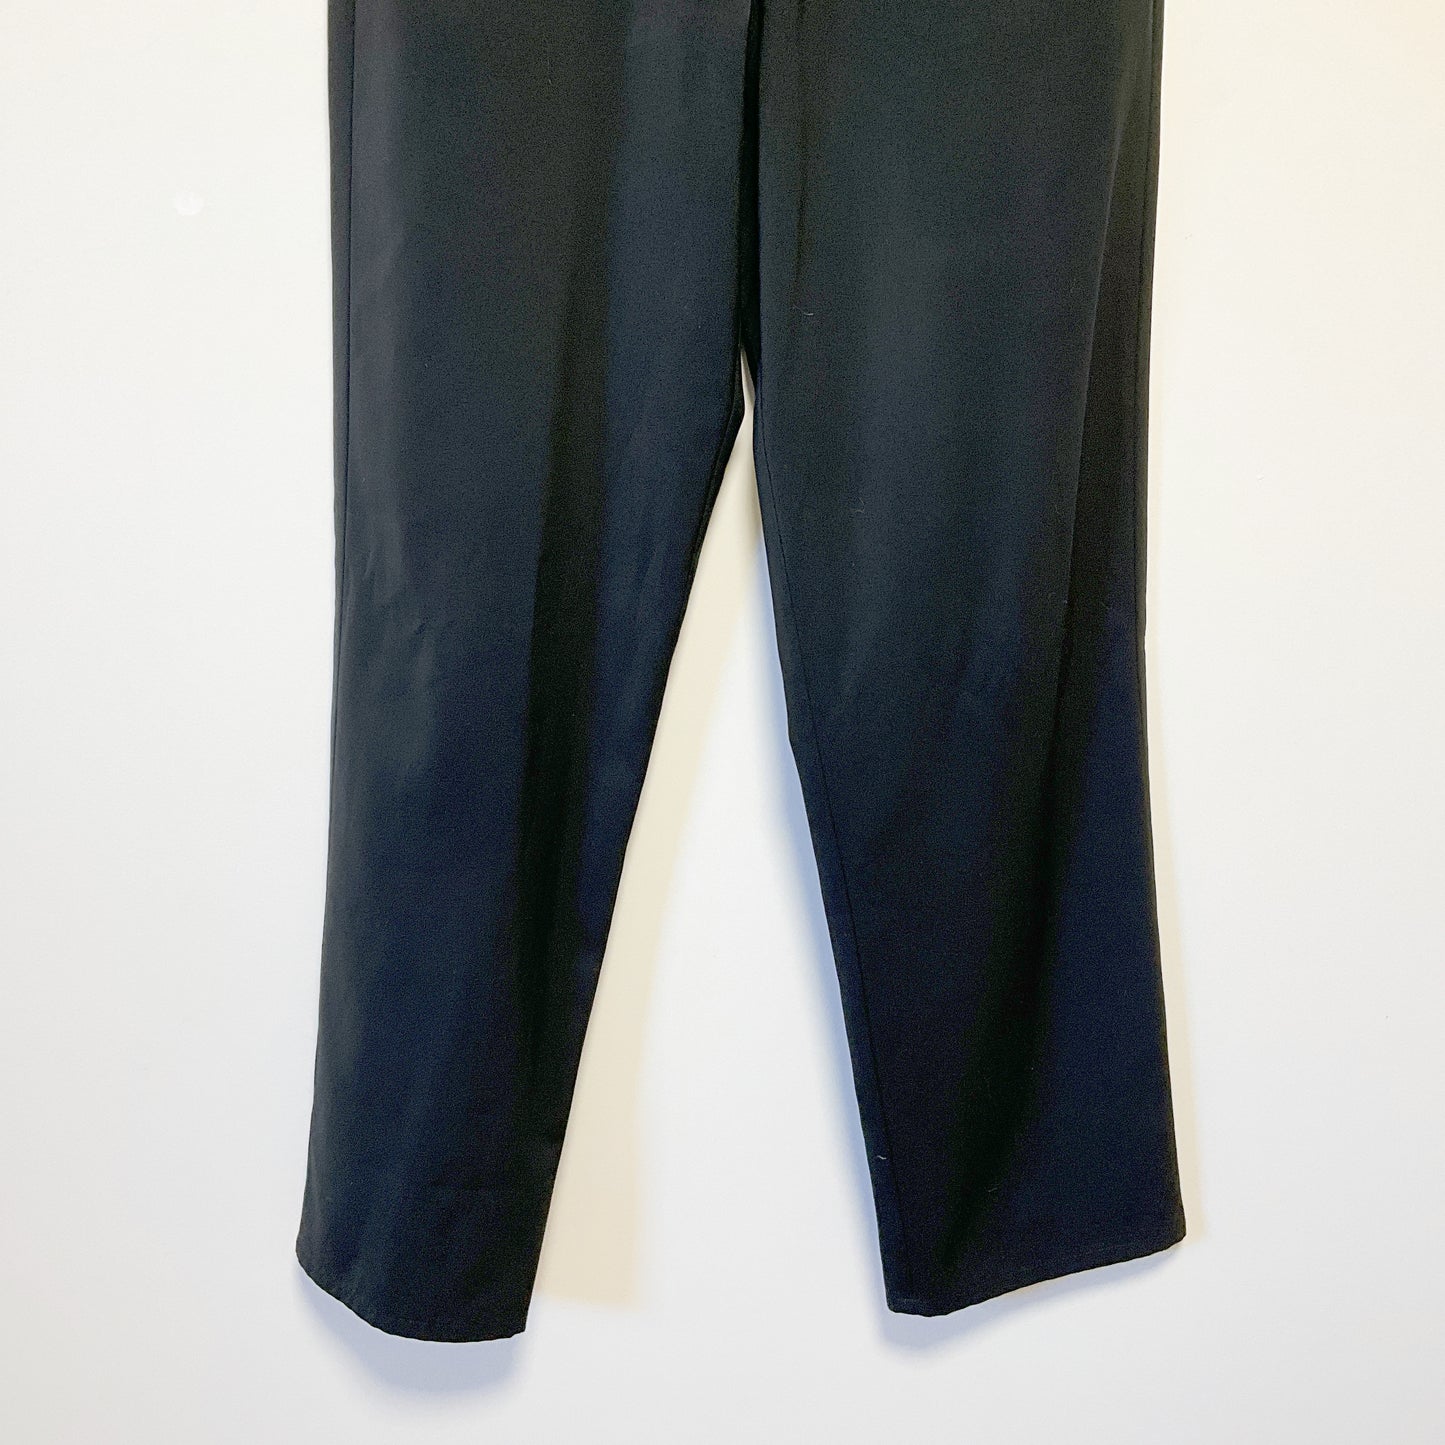 Hallenstein - Black Pants Size 80